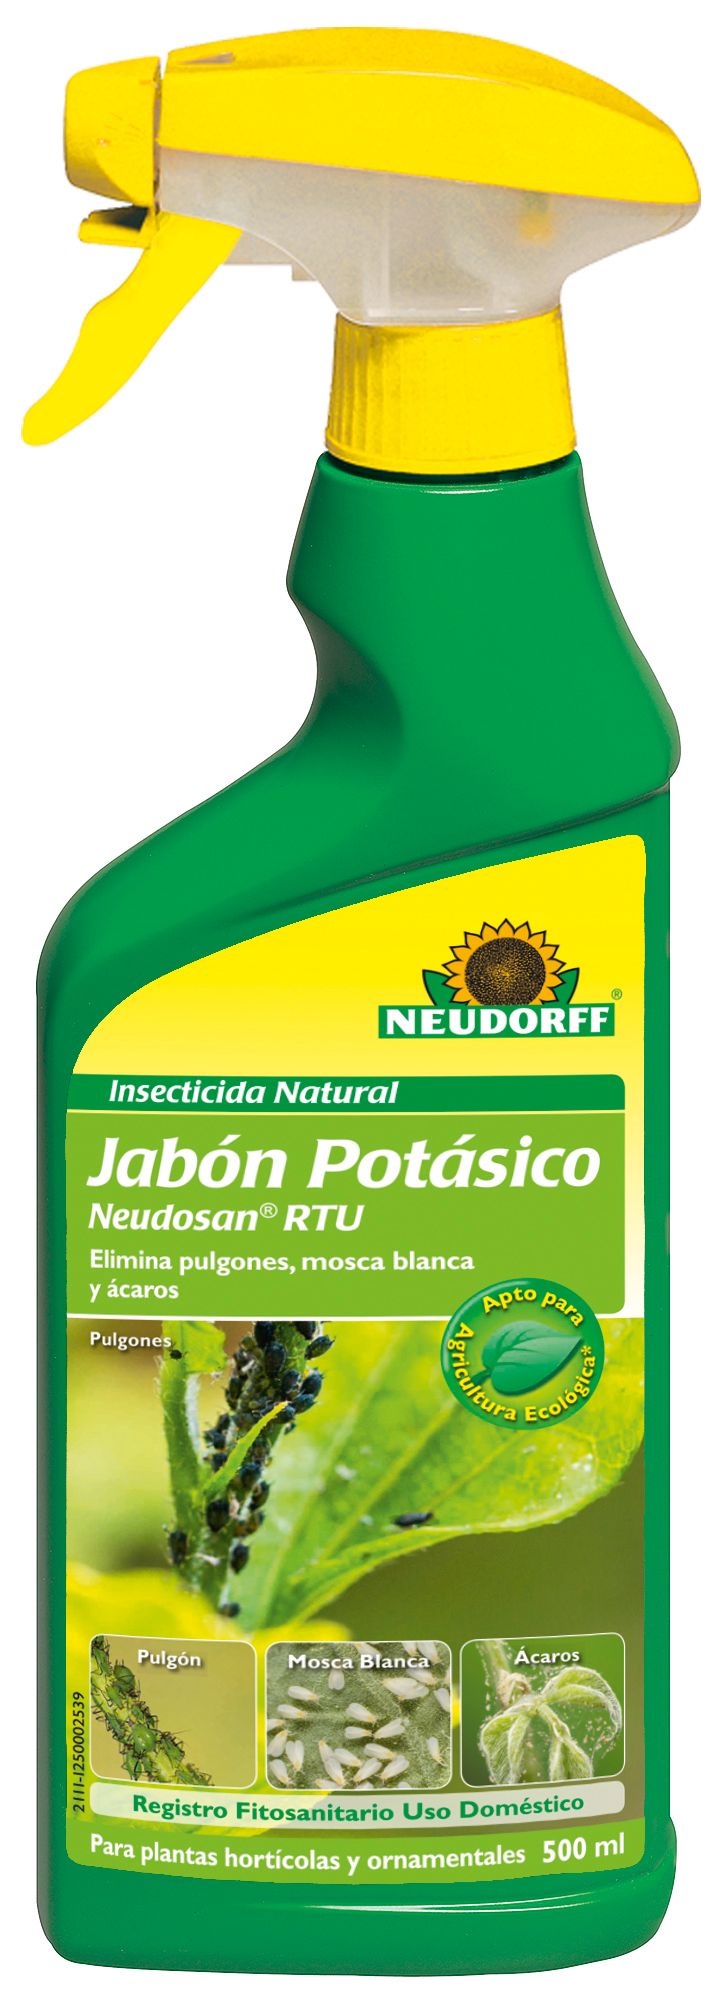 4005240180259 Insecticida Natural Jabón Potásico Neudosan RTU 500 ml_2111